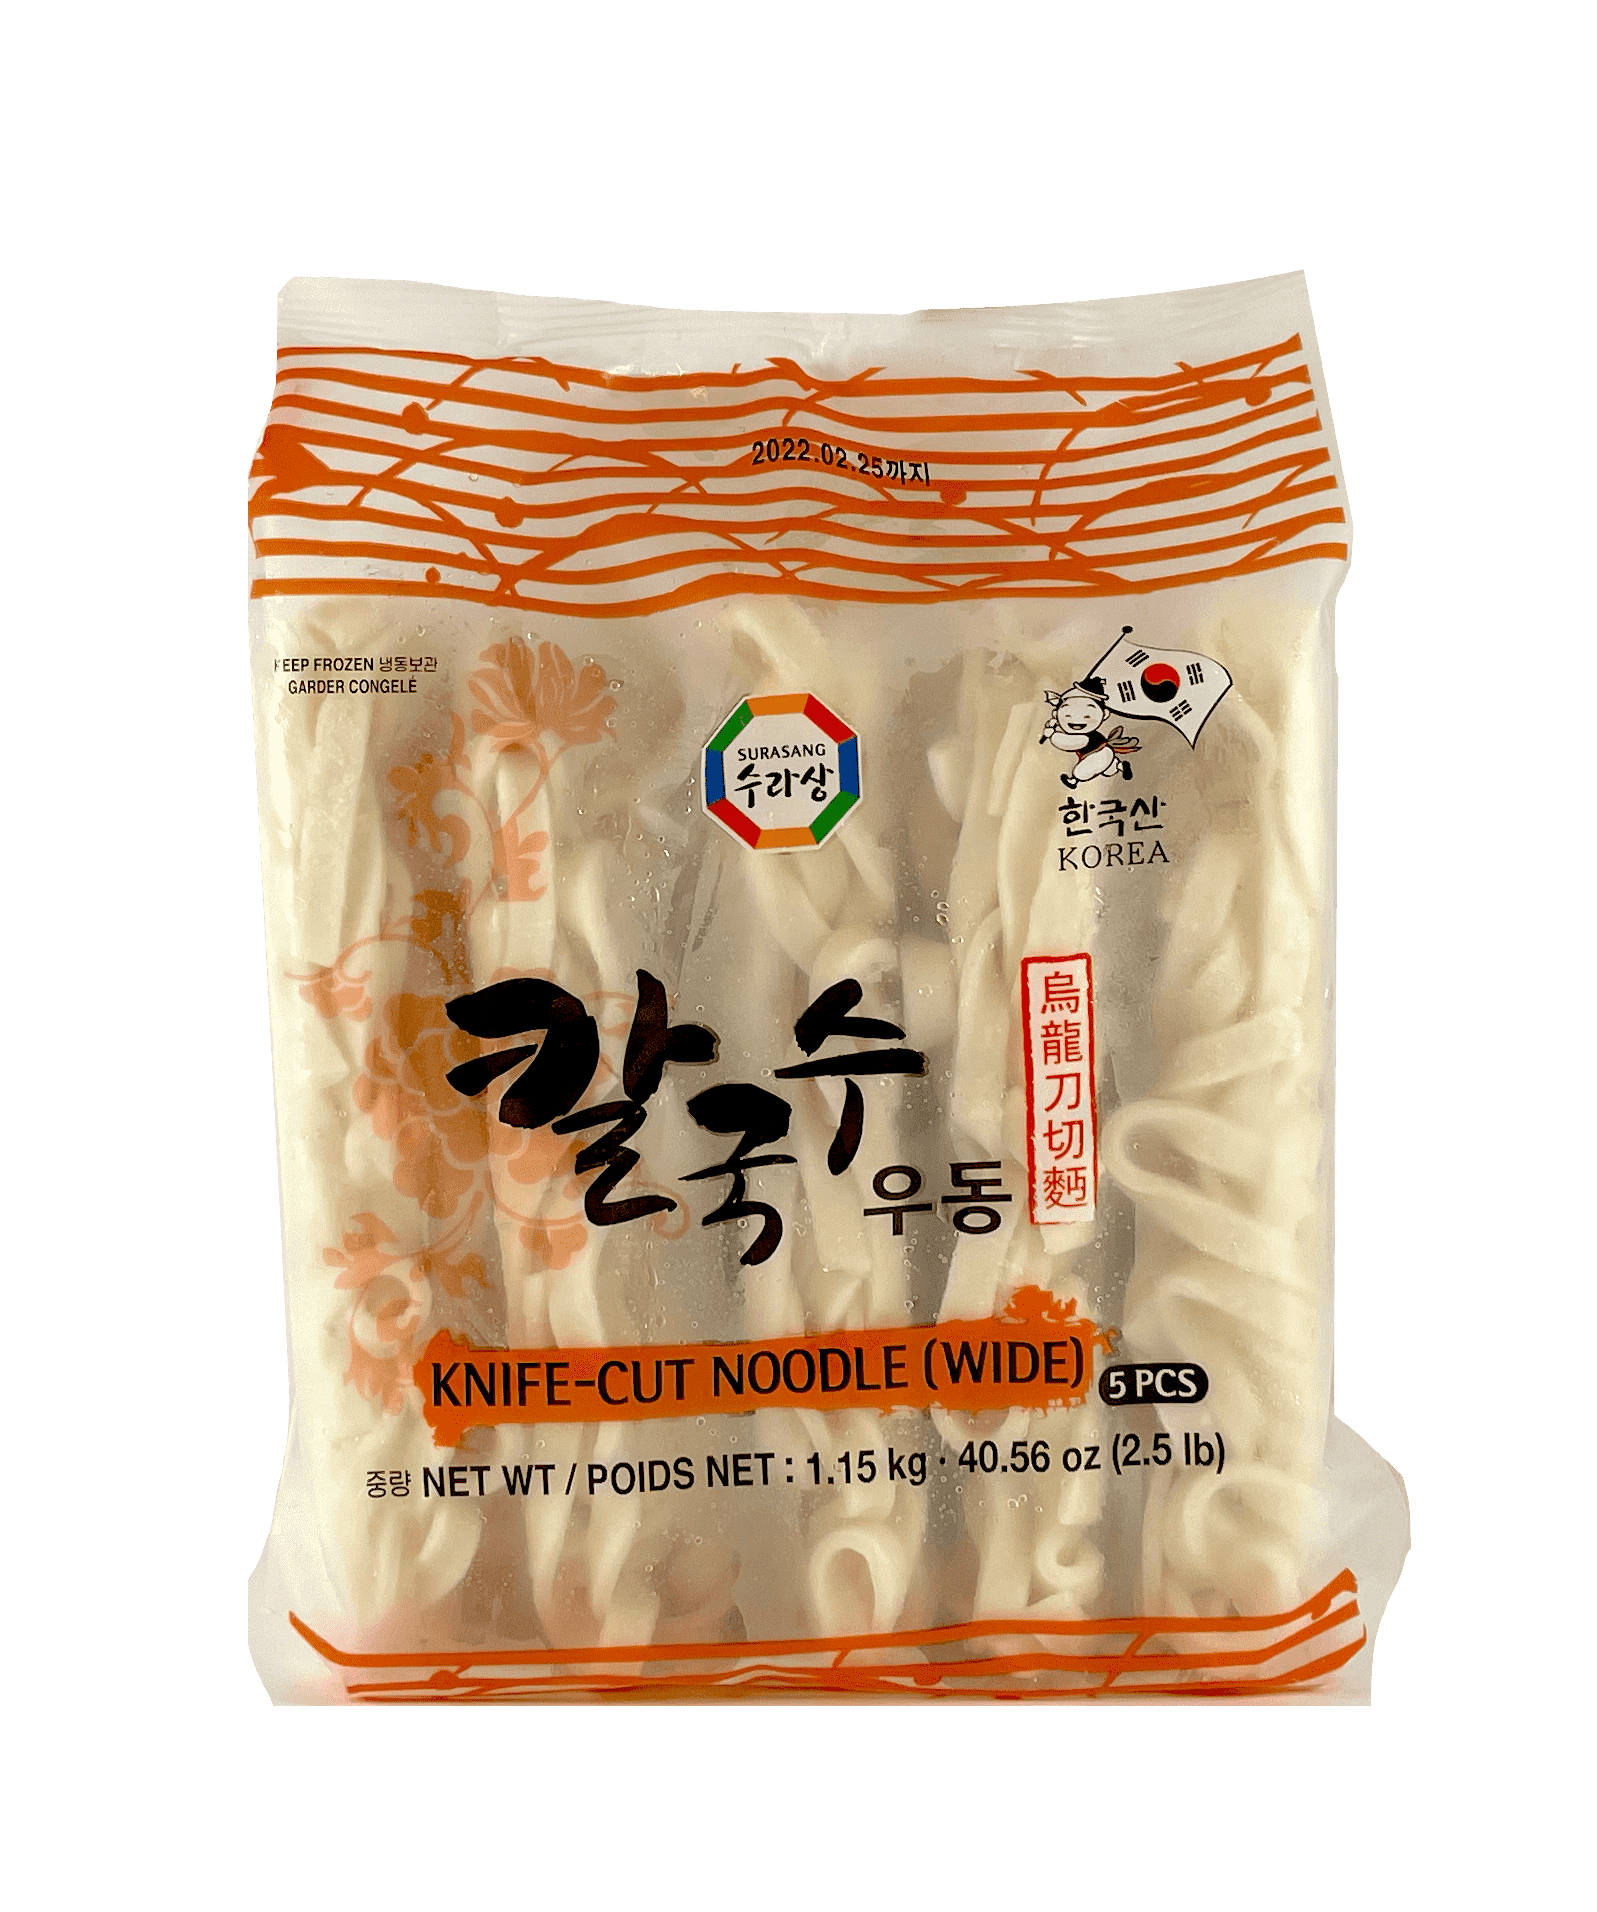 冷冻 刀切面 1.15kg Wang 韩国